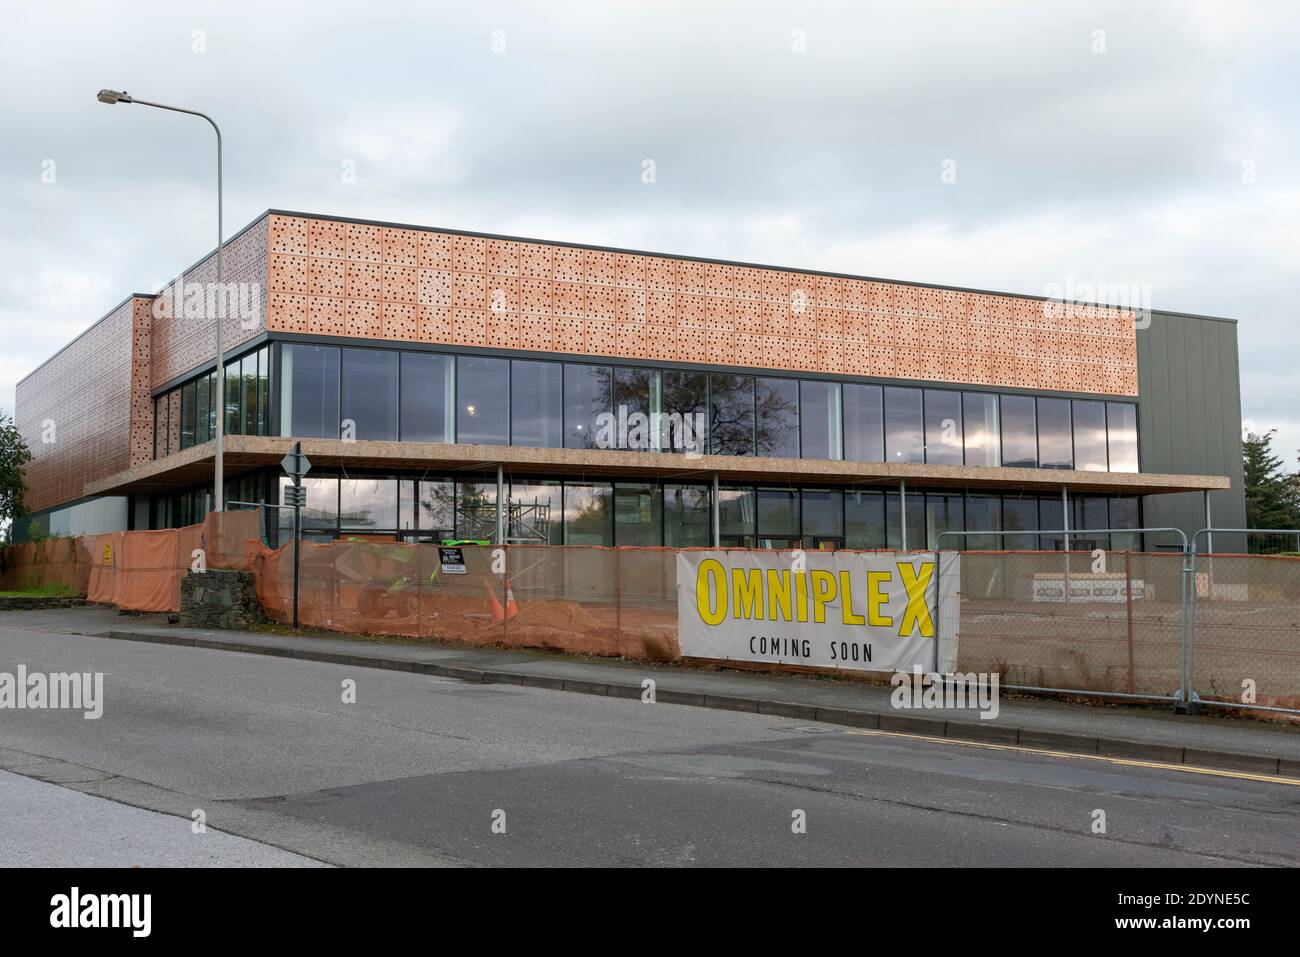 Omniplex Cinema Center Killarney cantiere e nuovo sviluppo Griffin Brothers Contraente a Killarney in Irlanda a partire dall'ottobre 2020 Foto Stock